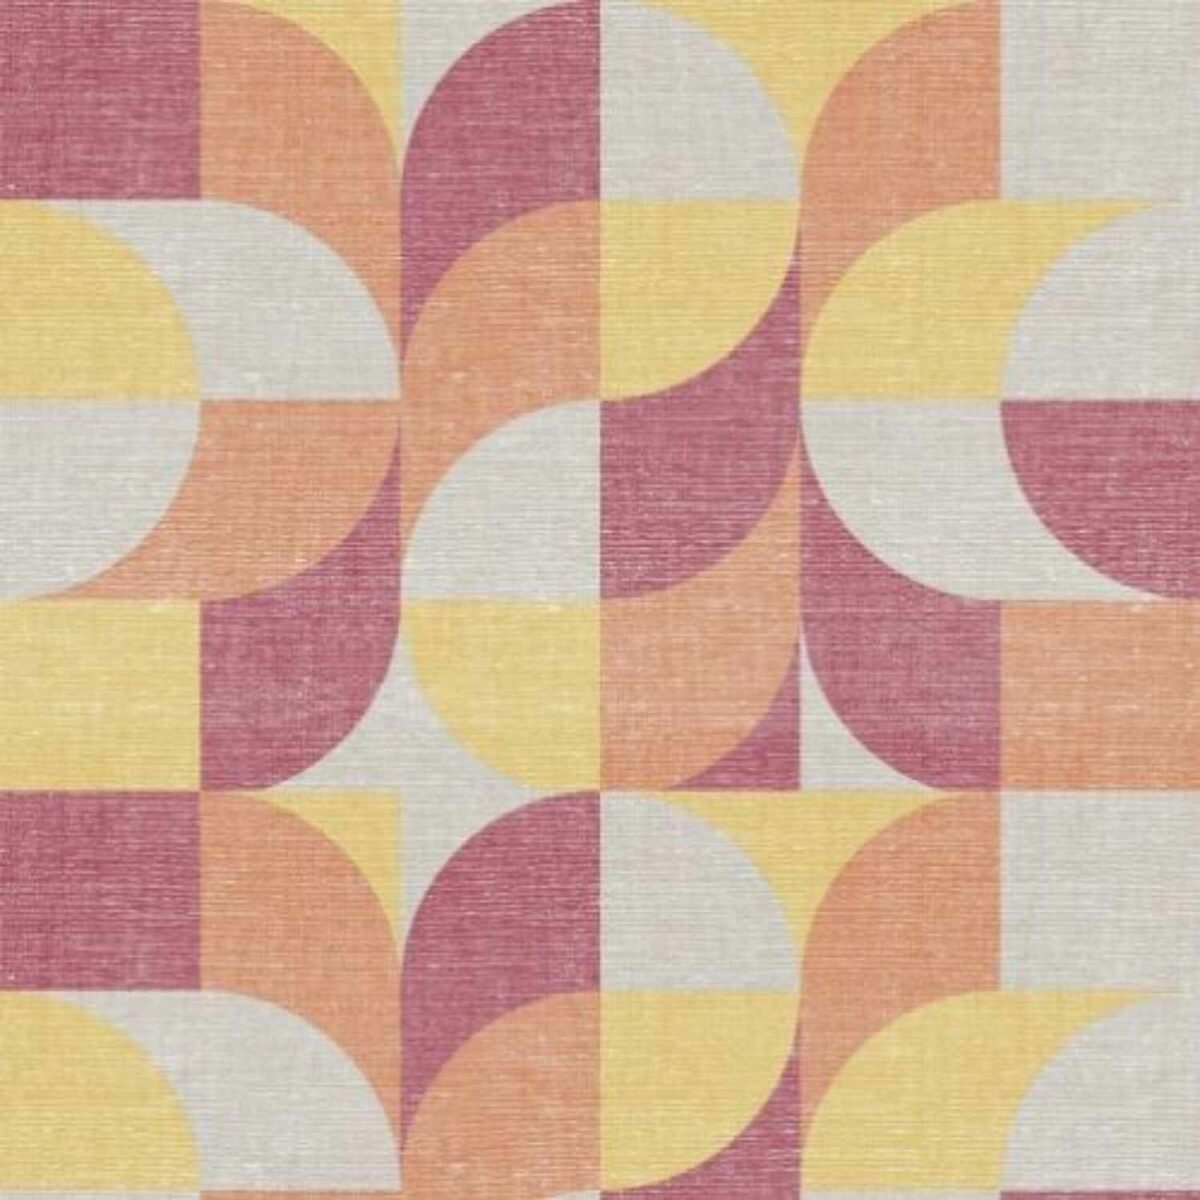 copripiumino-geopop-arancio-puro-cotone-quadrifoglio-geometrico-astratto-moderno-arancione-rosso-giallo-grigio-bordeaux-pattern